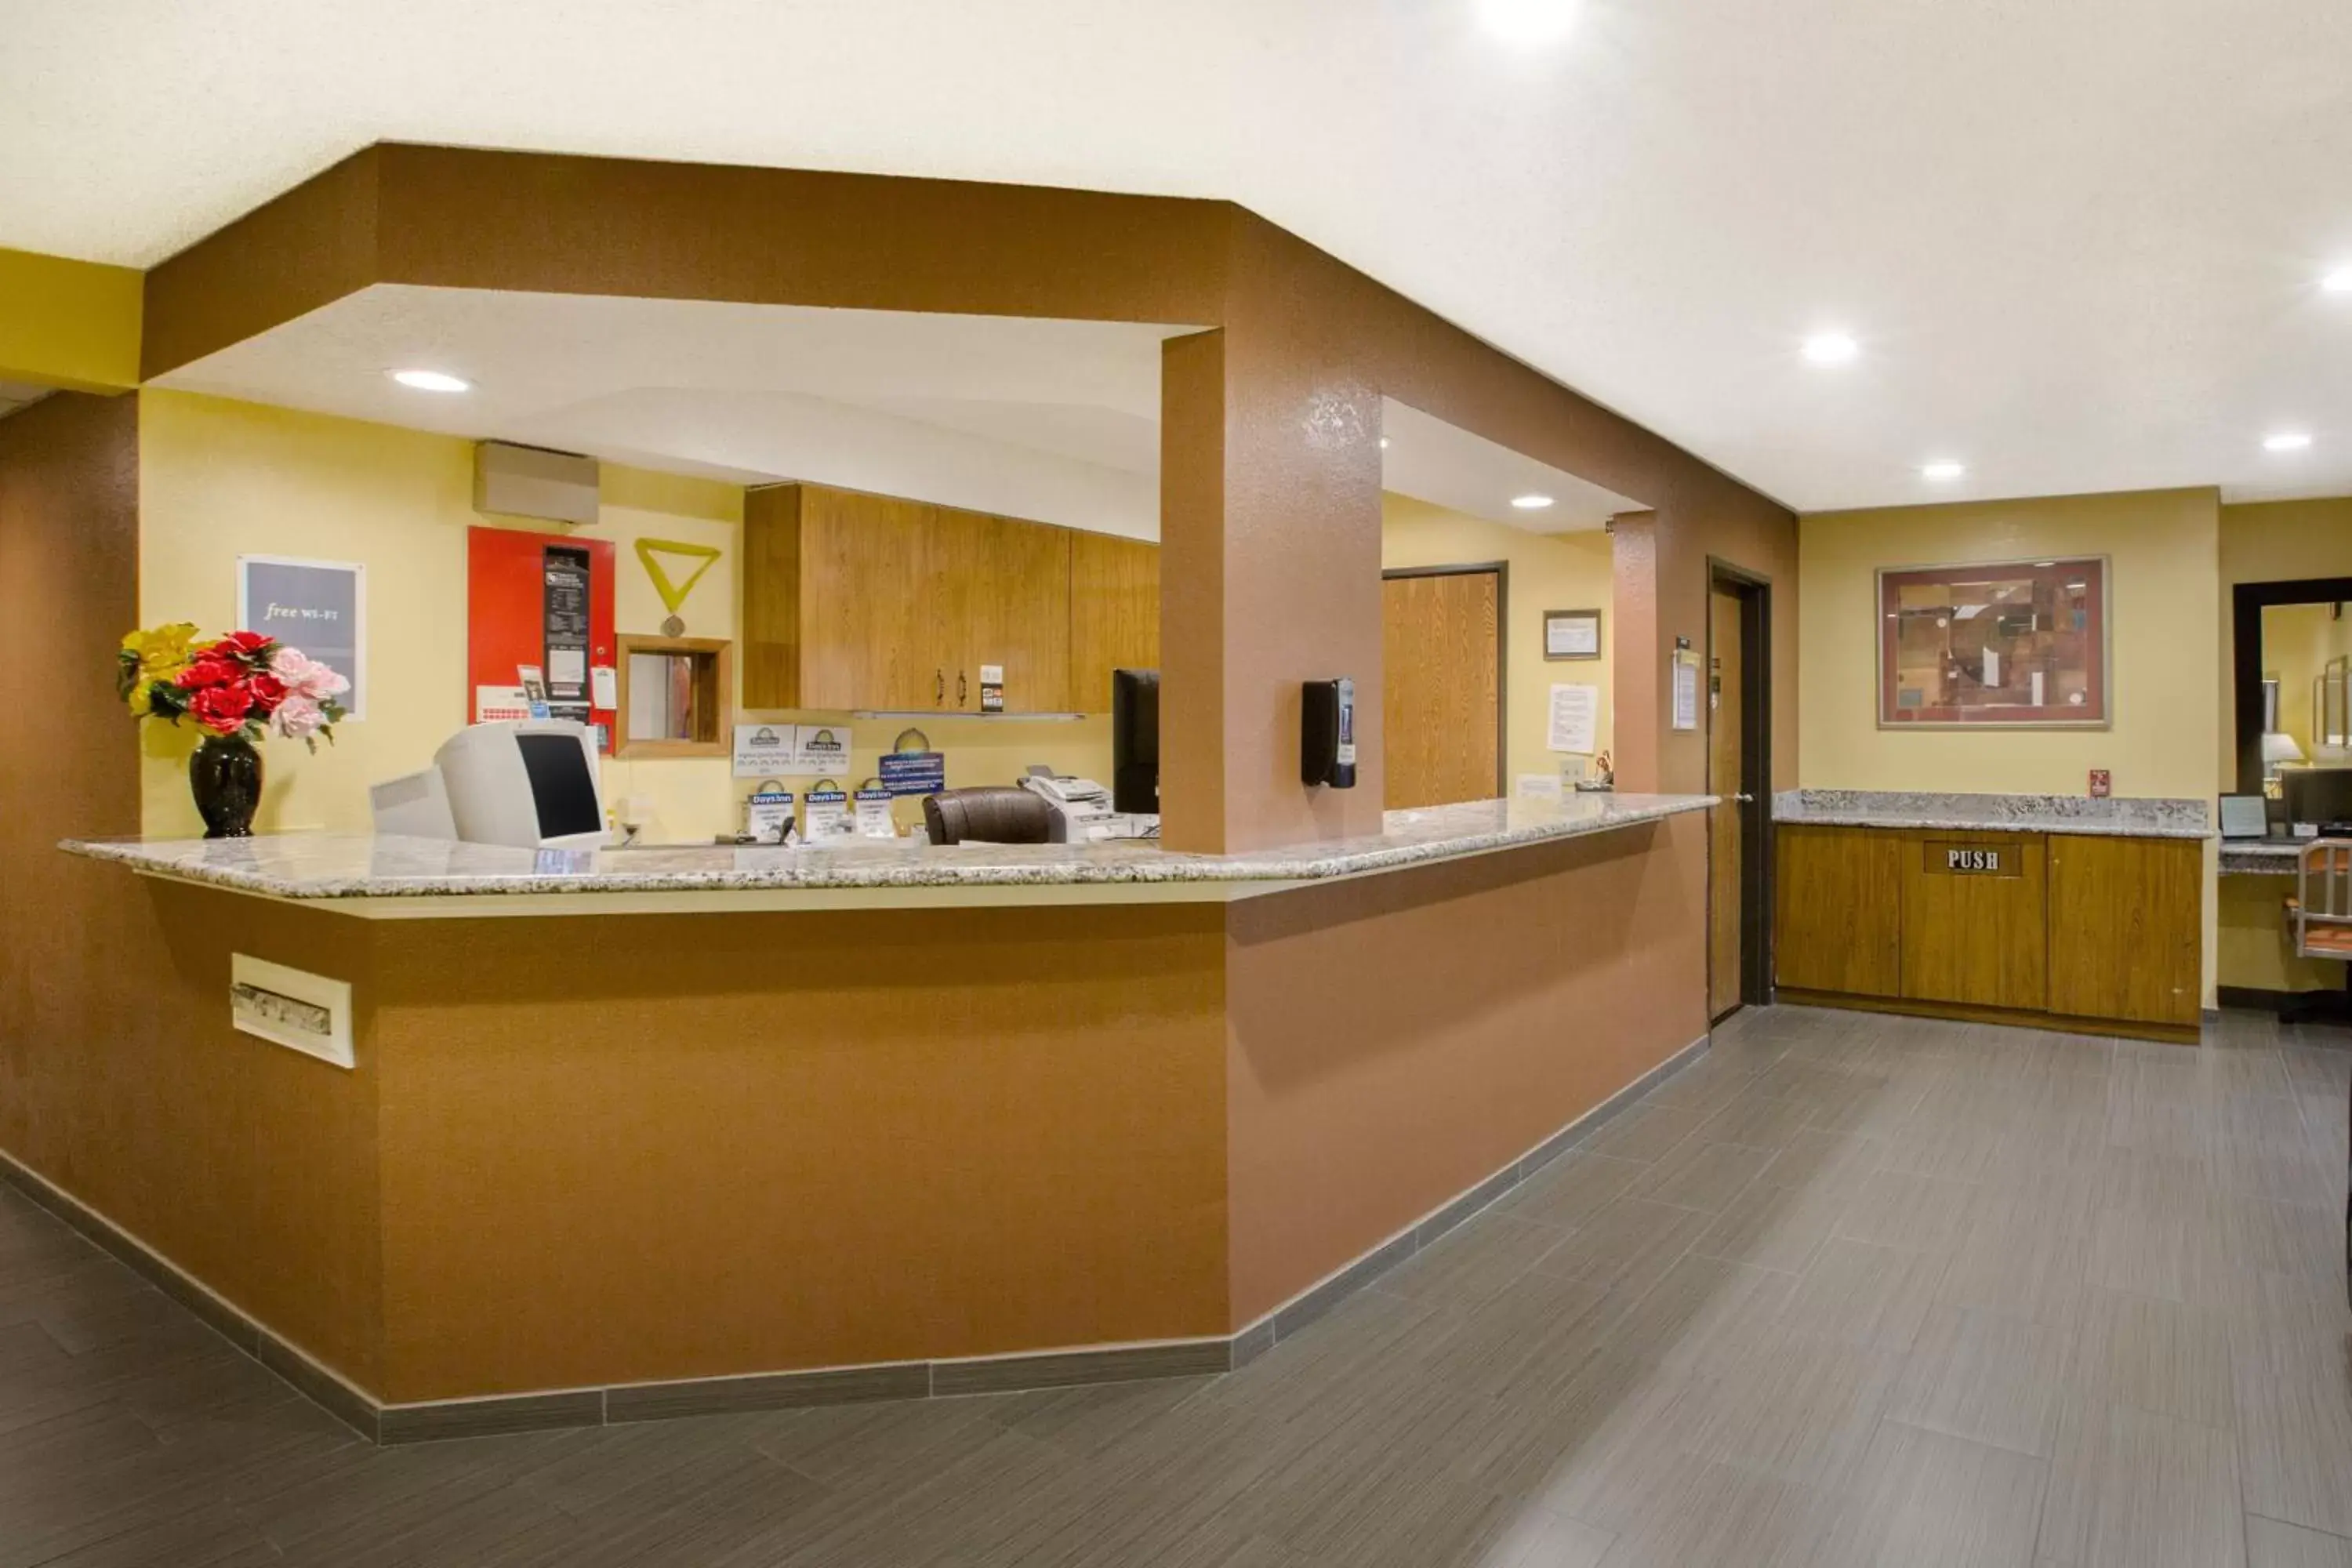 Lobby or reception, Lobby/Reception in Days Inn by Wyndham Fremont